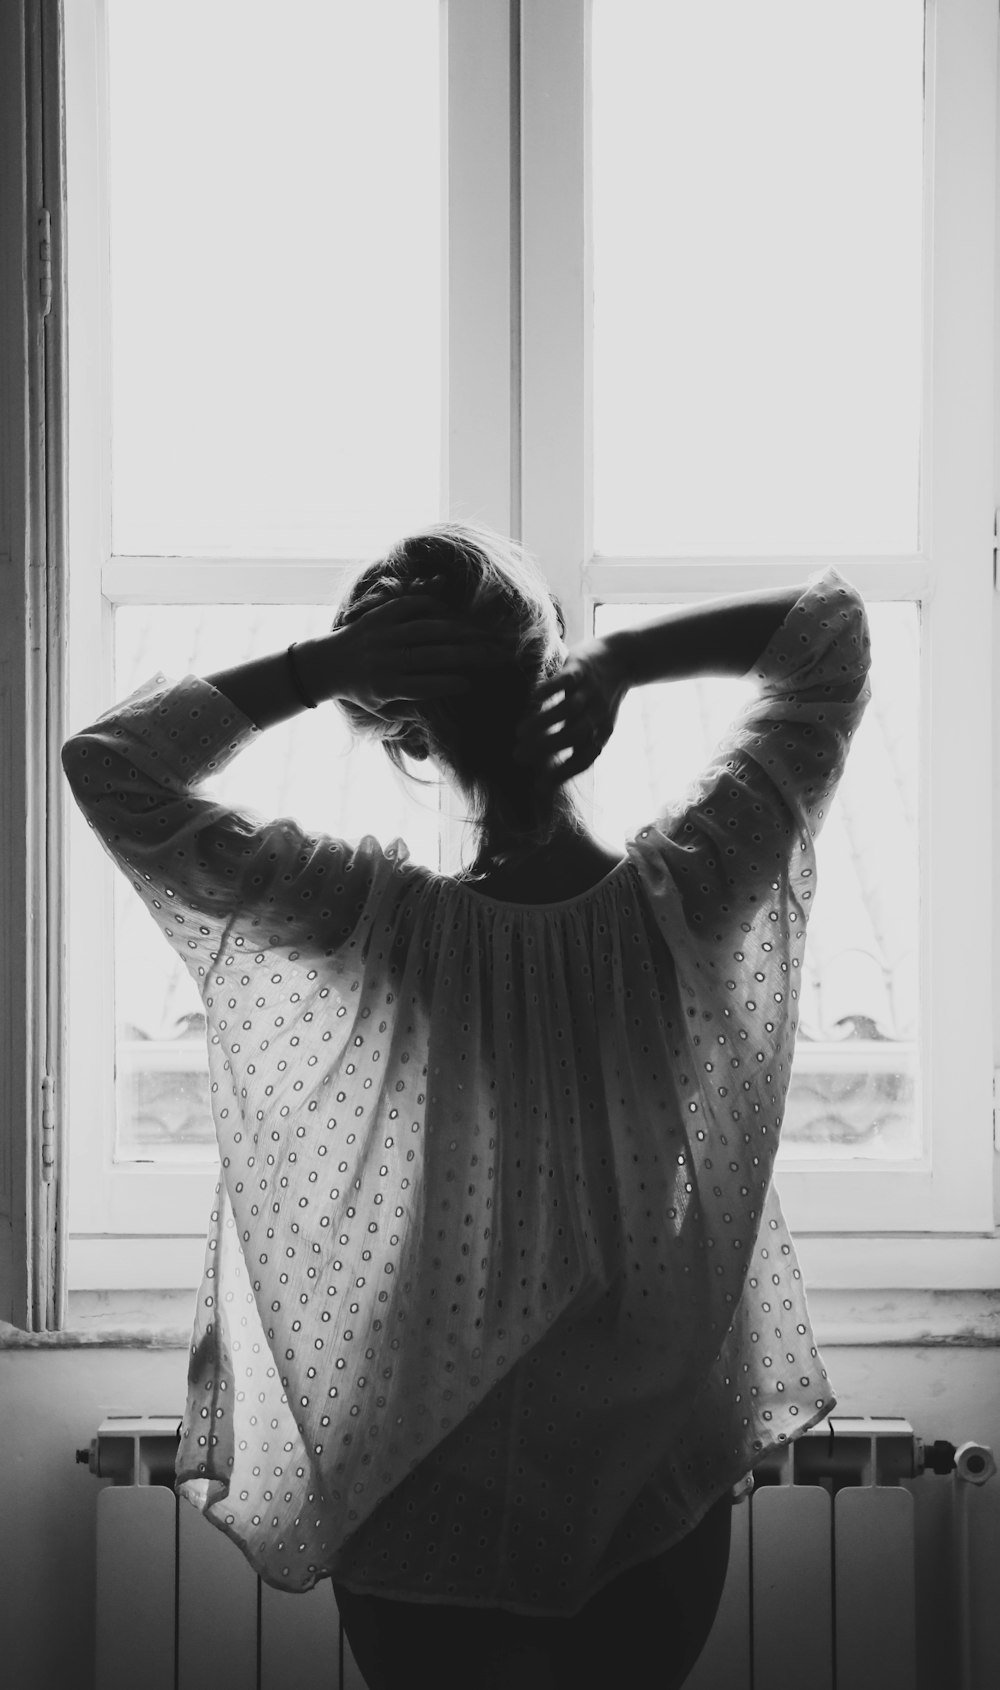 fotografia in scala di grigi di donna in piedi davanti alla finestra